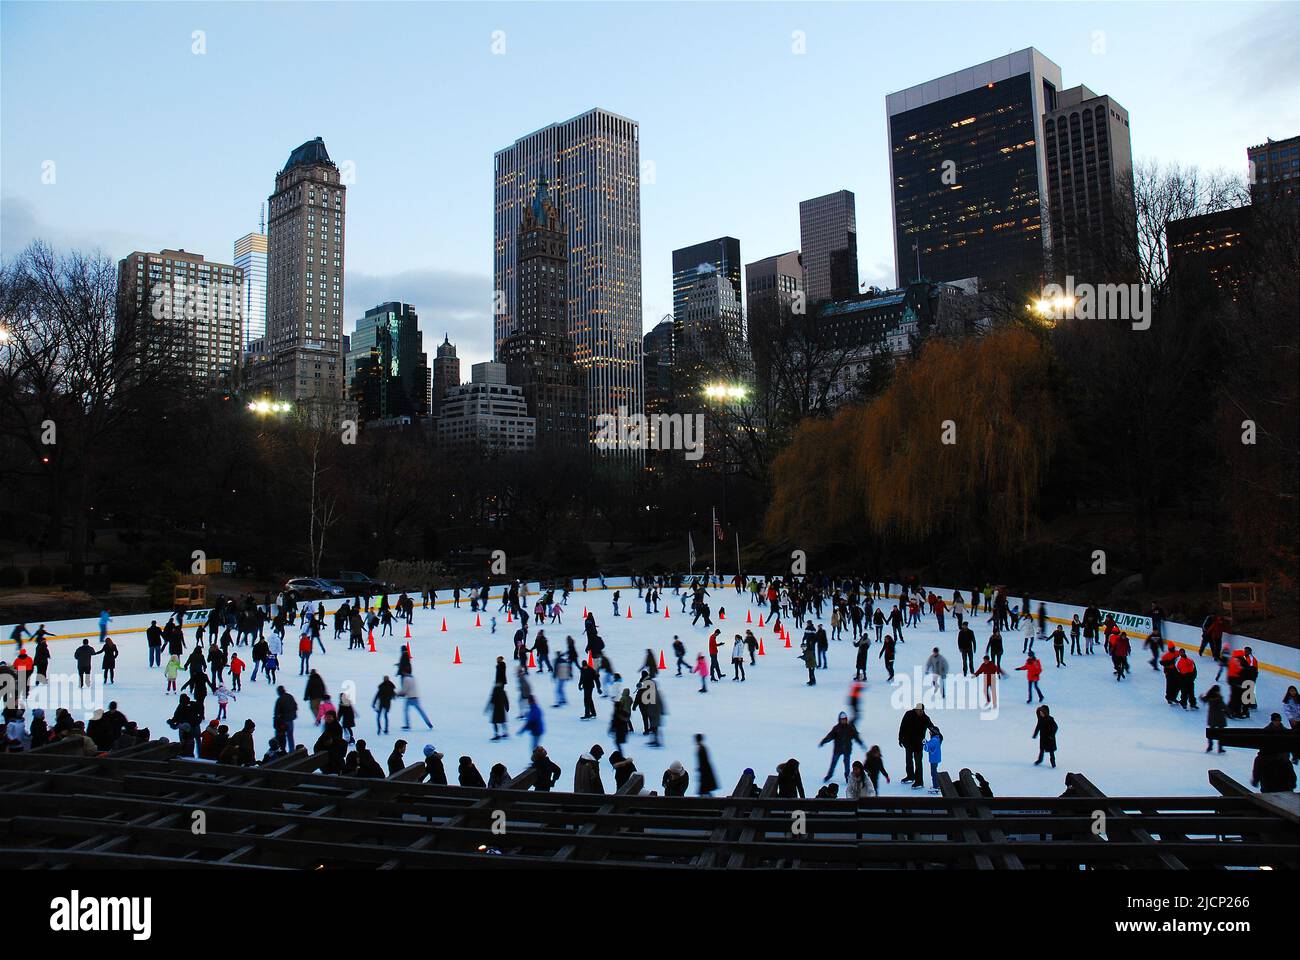 Une grande foule de patineurs de glace aiment utiliser la patinoire Wollman Rink dans Central Park, sous les gratte-ciel de New York lors d'une journée d'hiver Banque D'Images